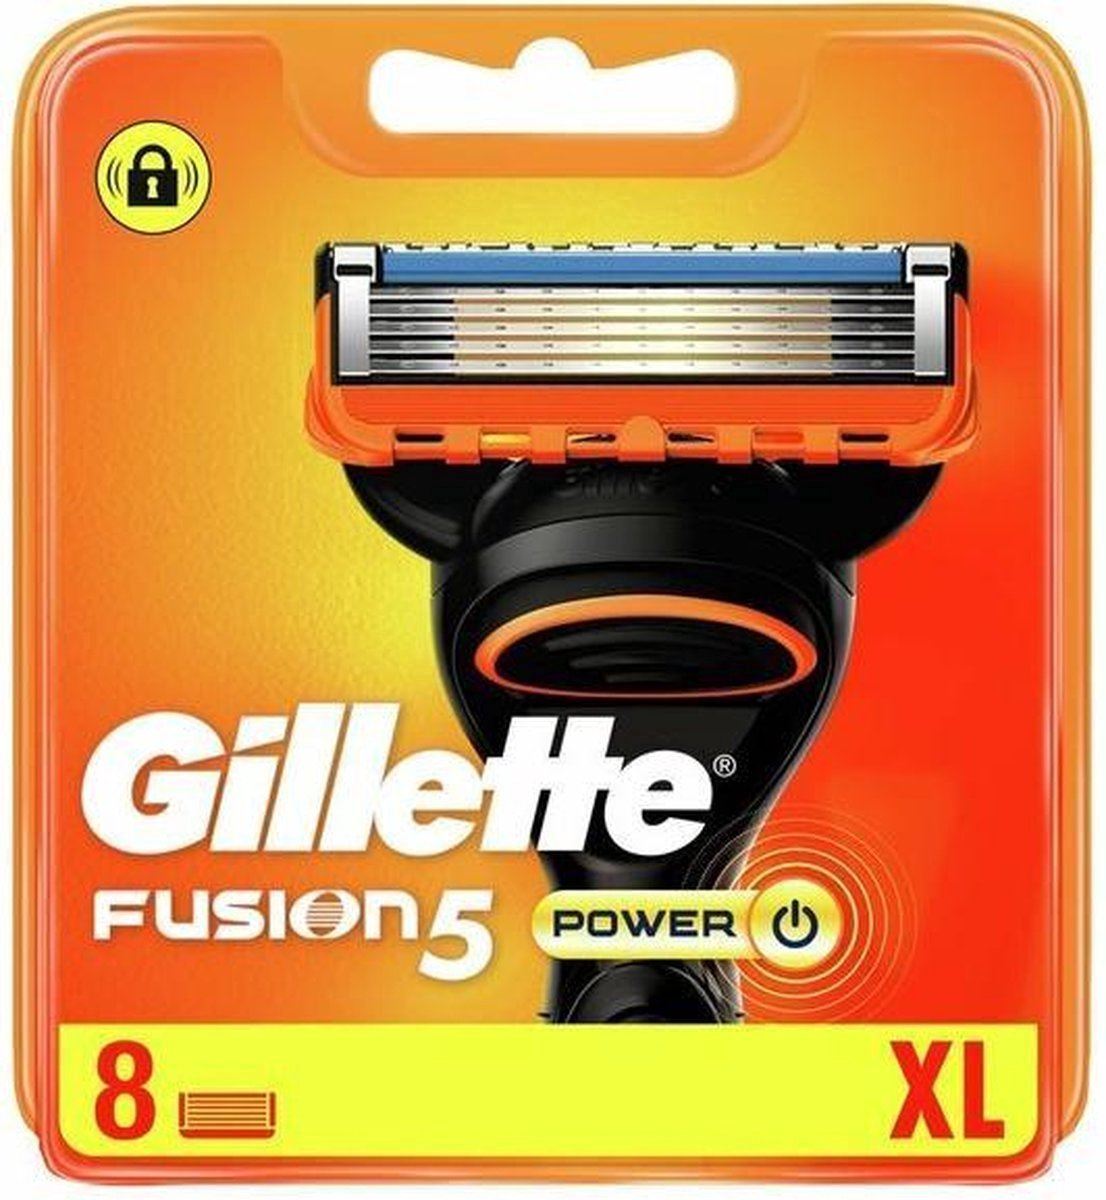 Gillette-Fusion-5-Razor-Blades-8pcs-Power-XL